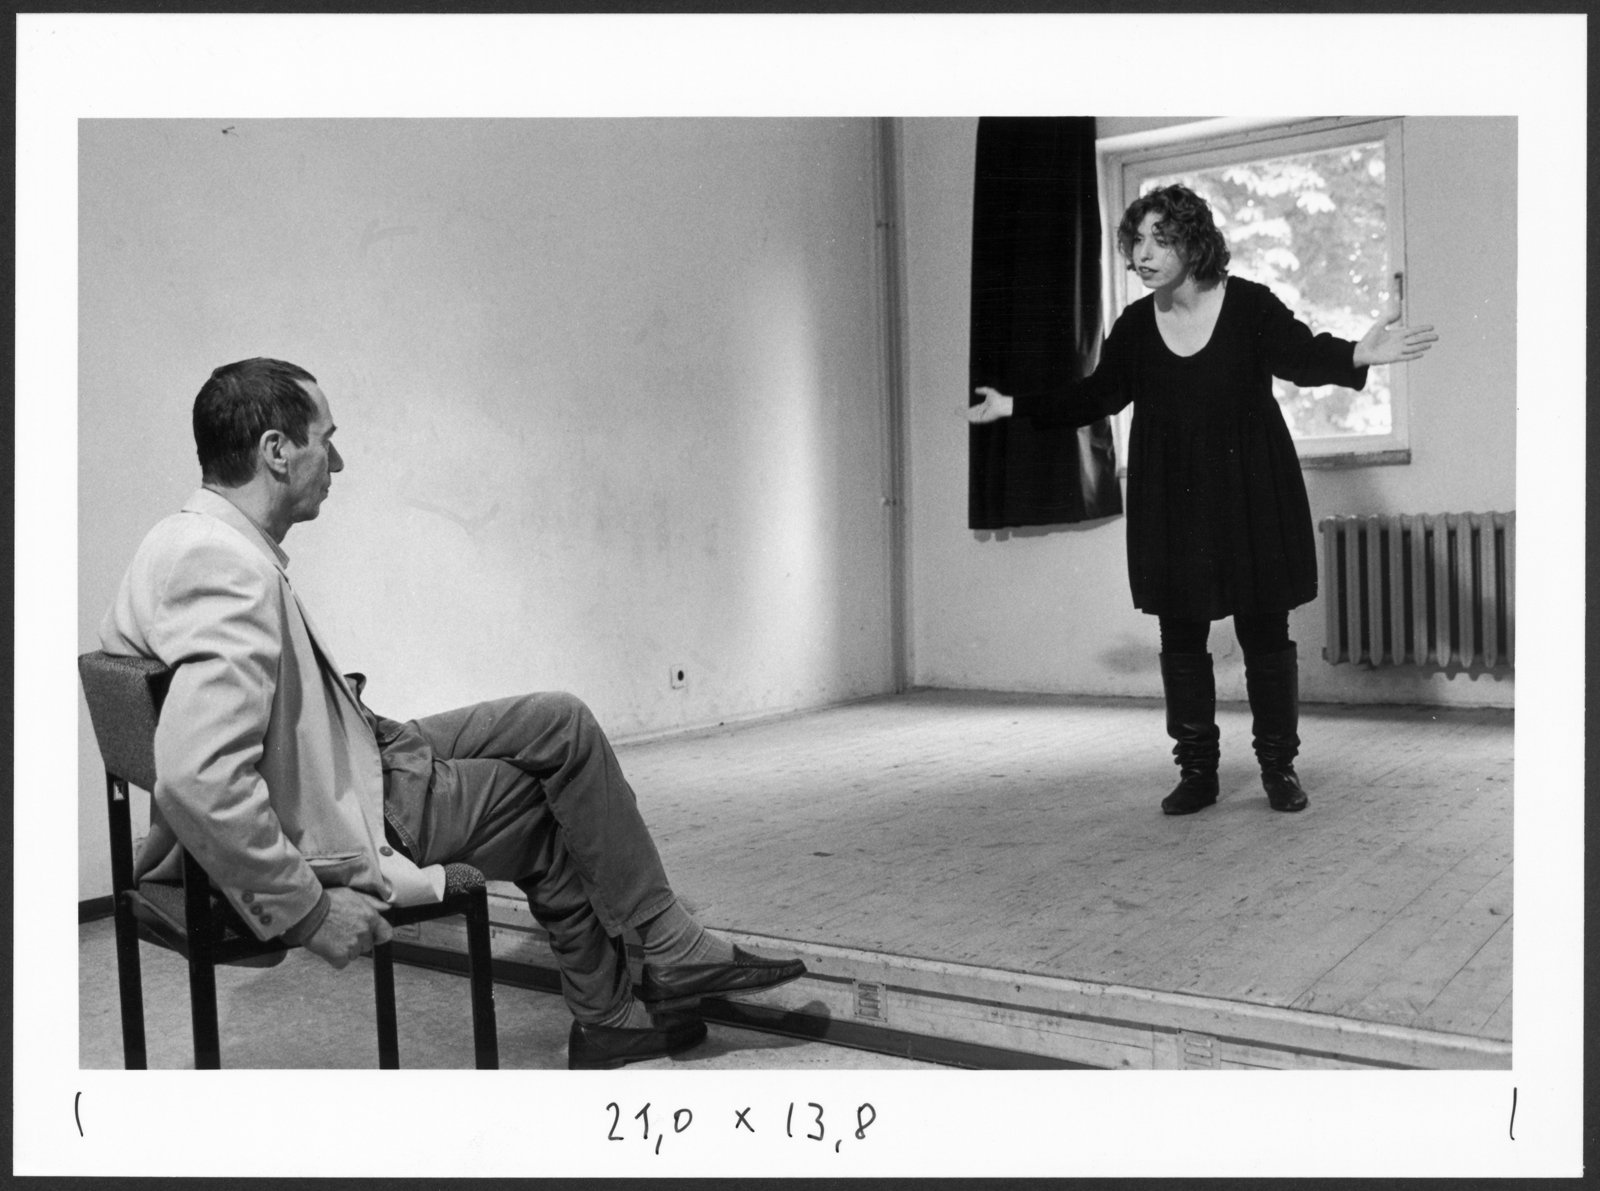 Bild aus dem Sprechunterricht an der Hochschule für Schauspielkunst Ernst Busch (Hochschule für Schauspielkunst Ernst Busch Berlin RR-F)